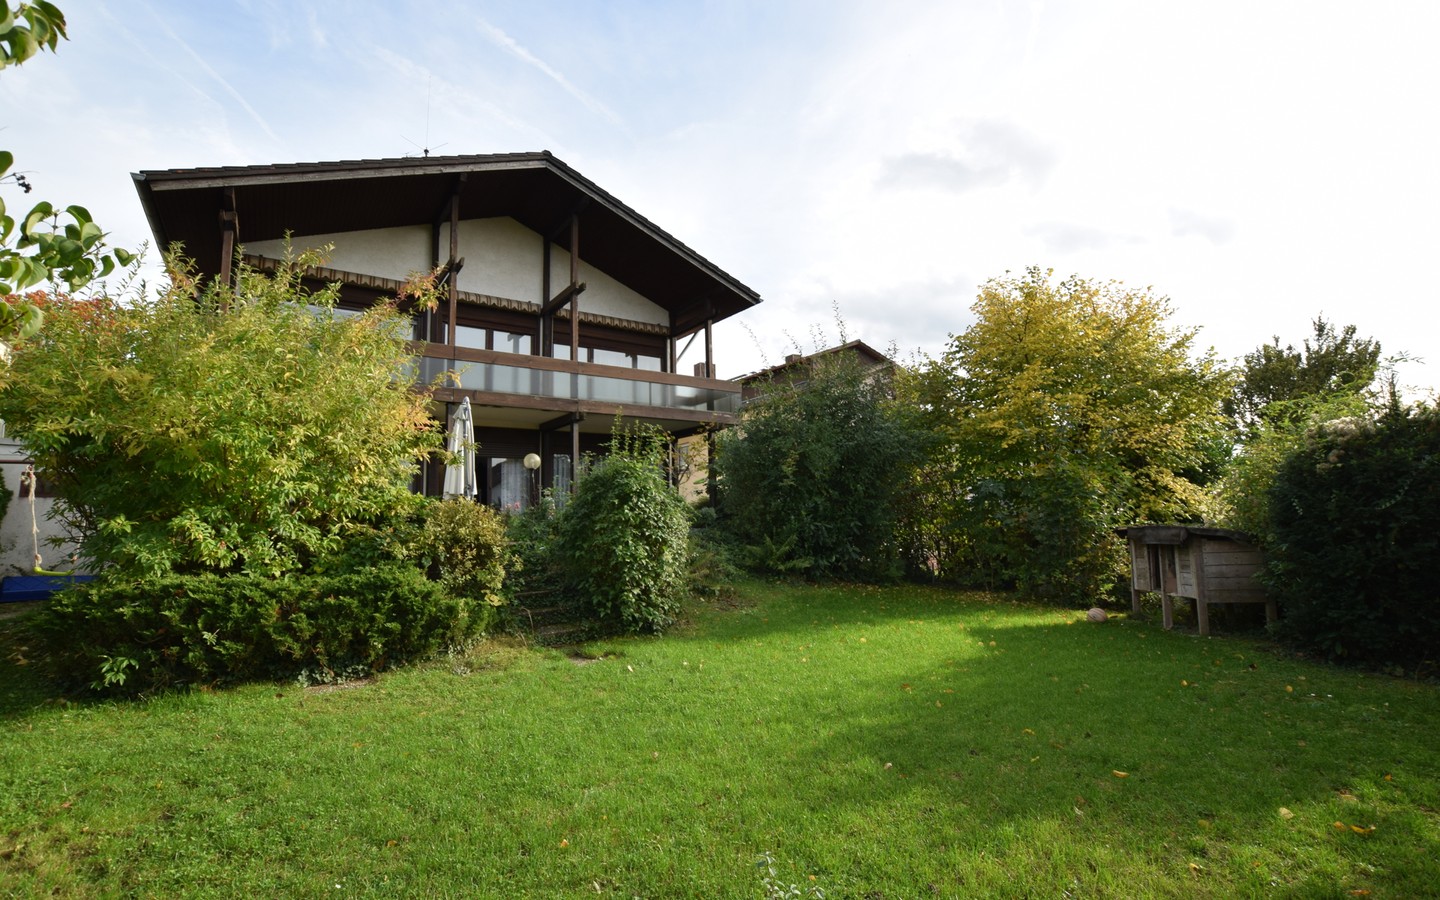 Blick auf Haus und Garten - 3-Familienhaus auf großem Grundstück in gewachsener Lage von Wiesloch